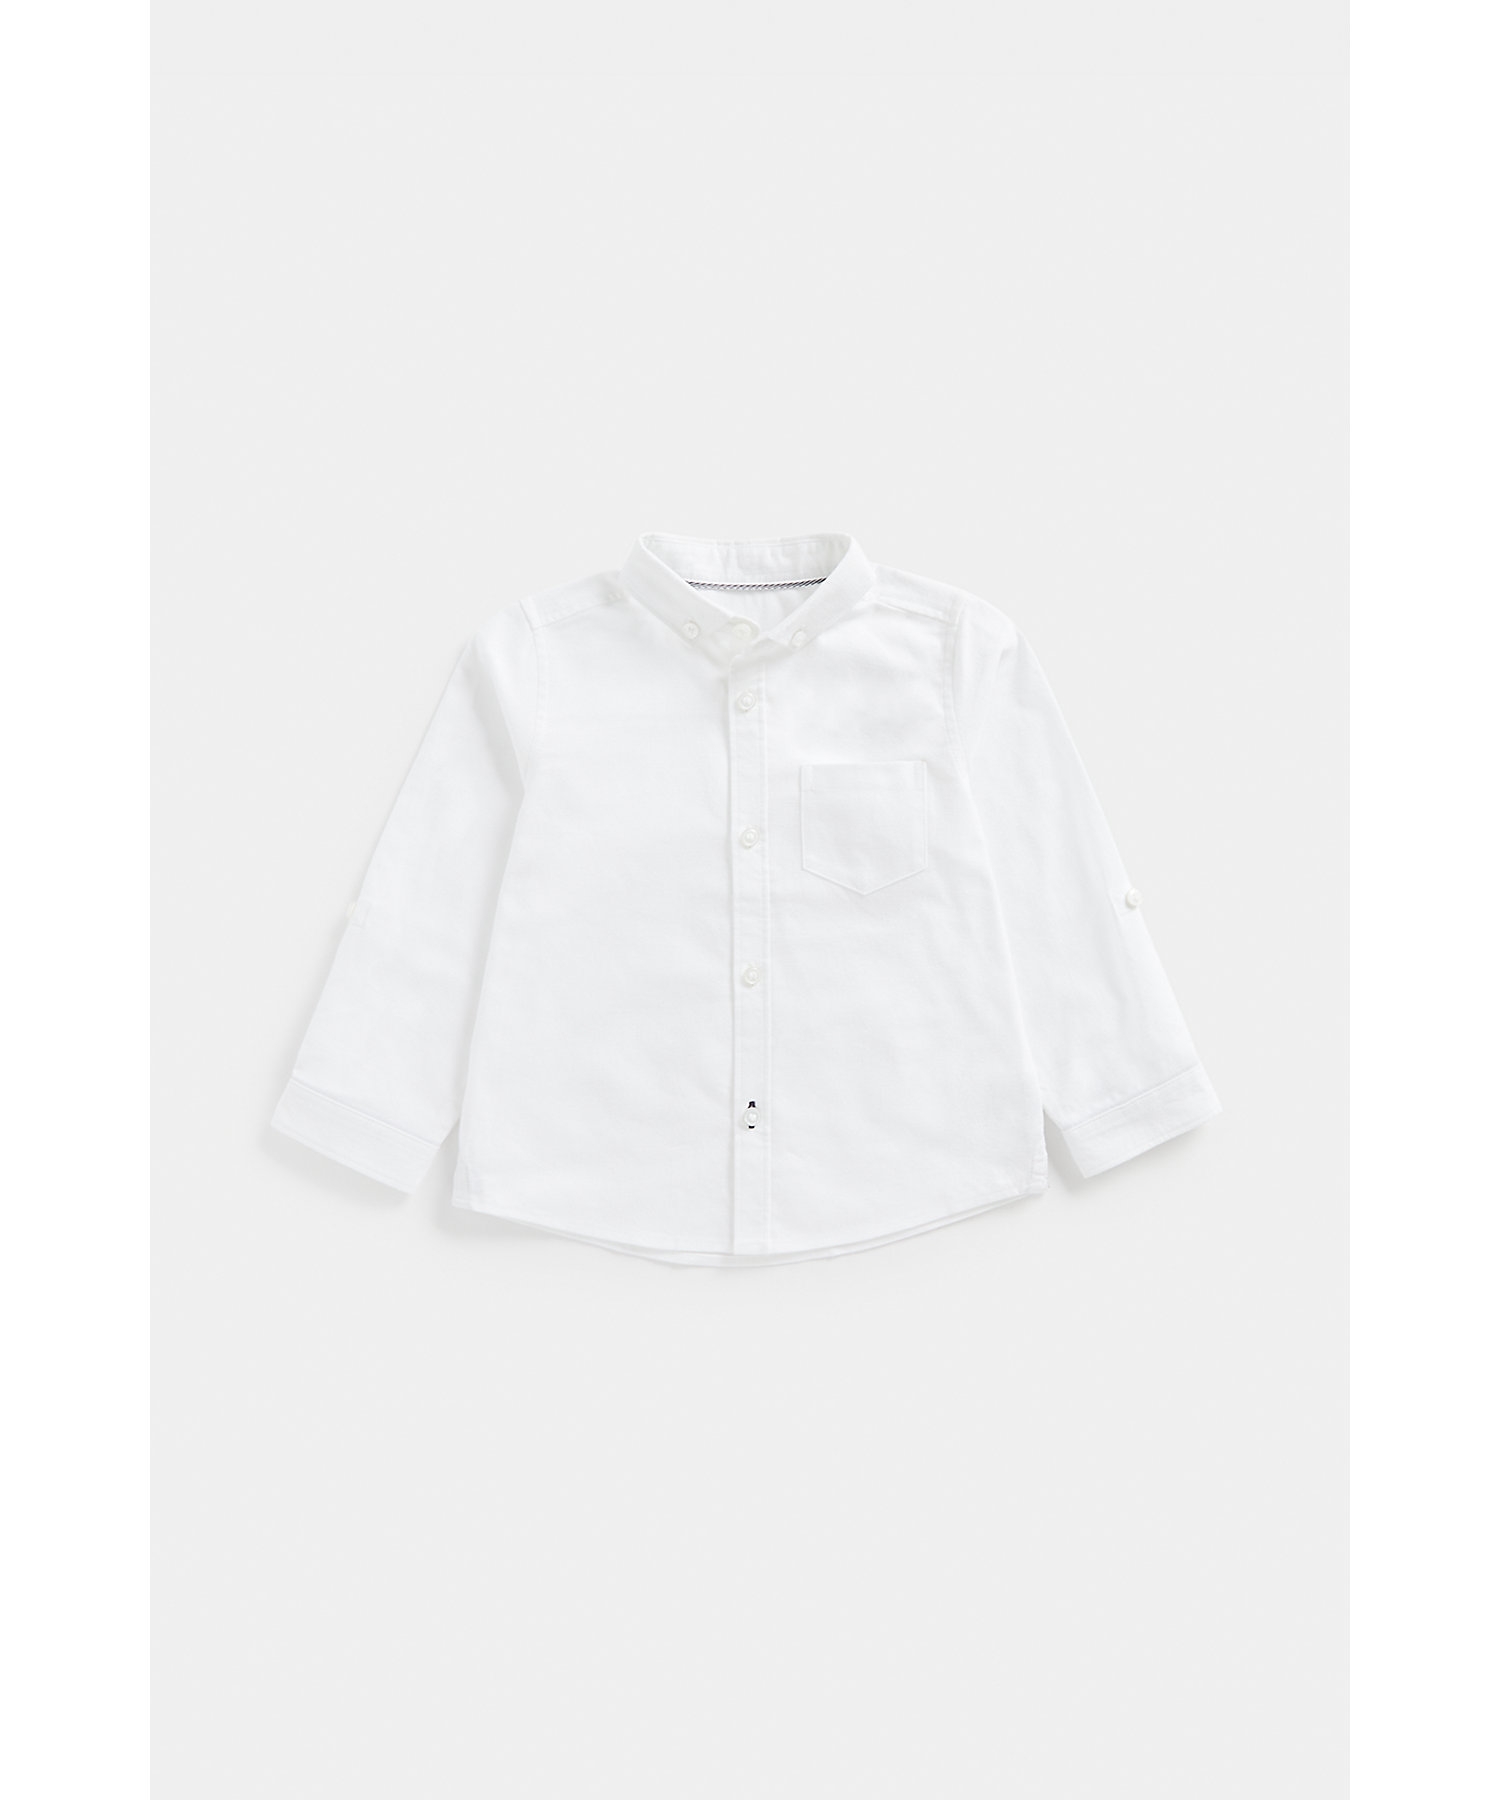 Boys Full Sleeves Oxford Shirt -White